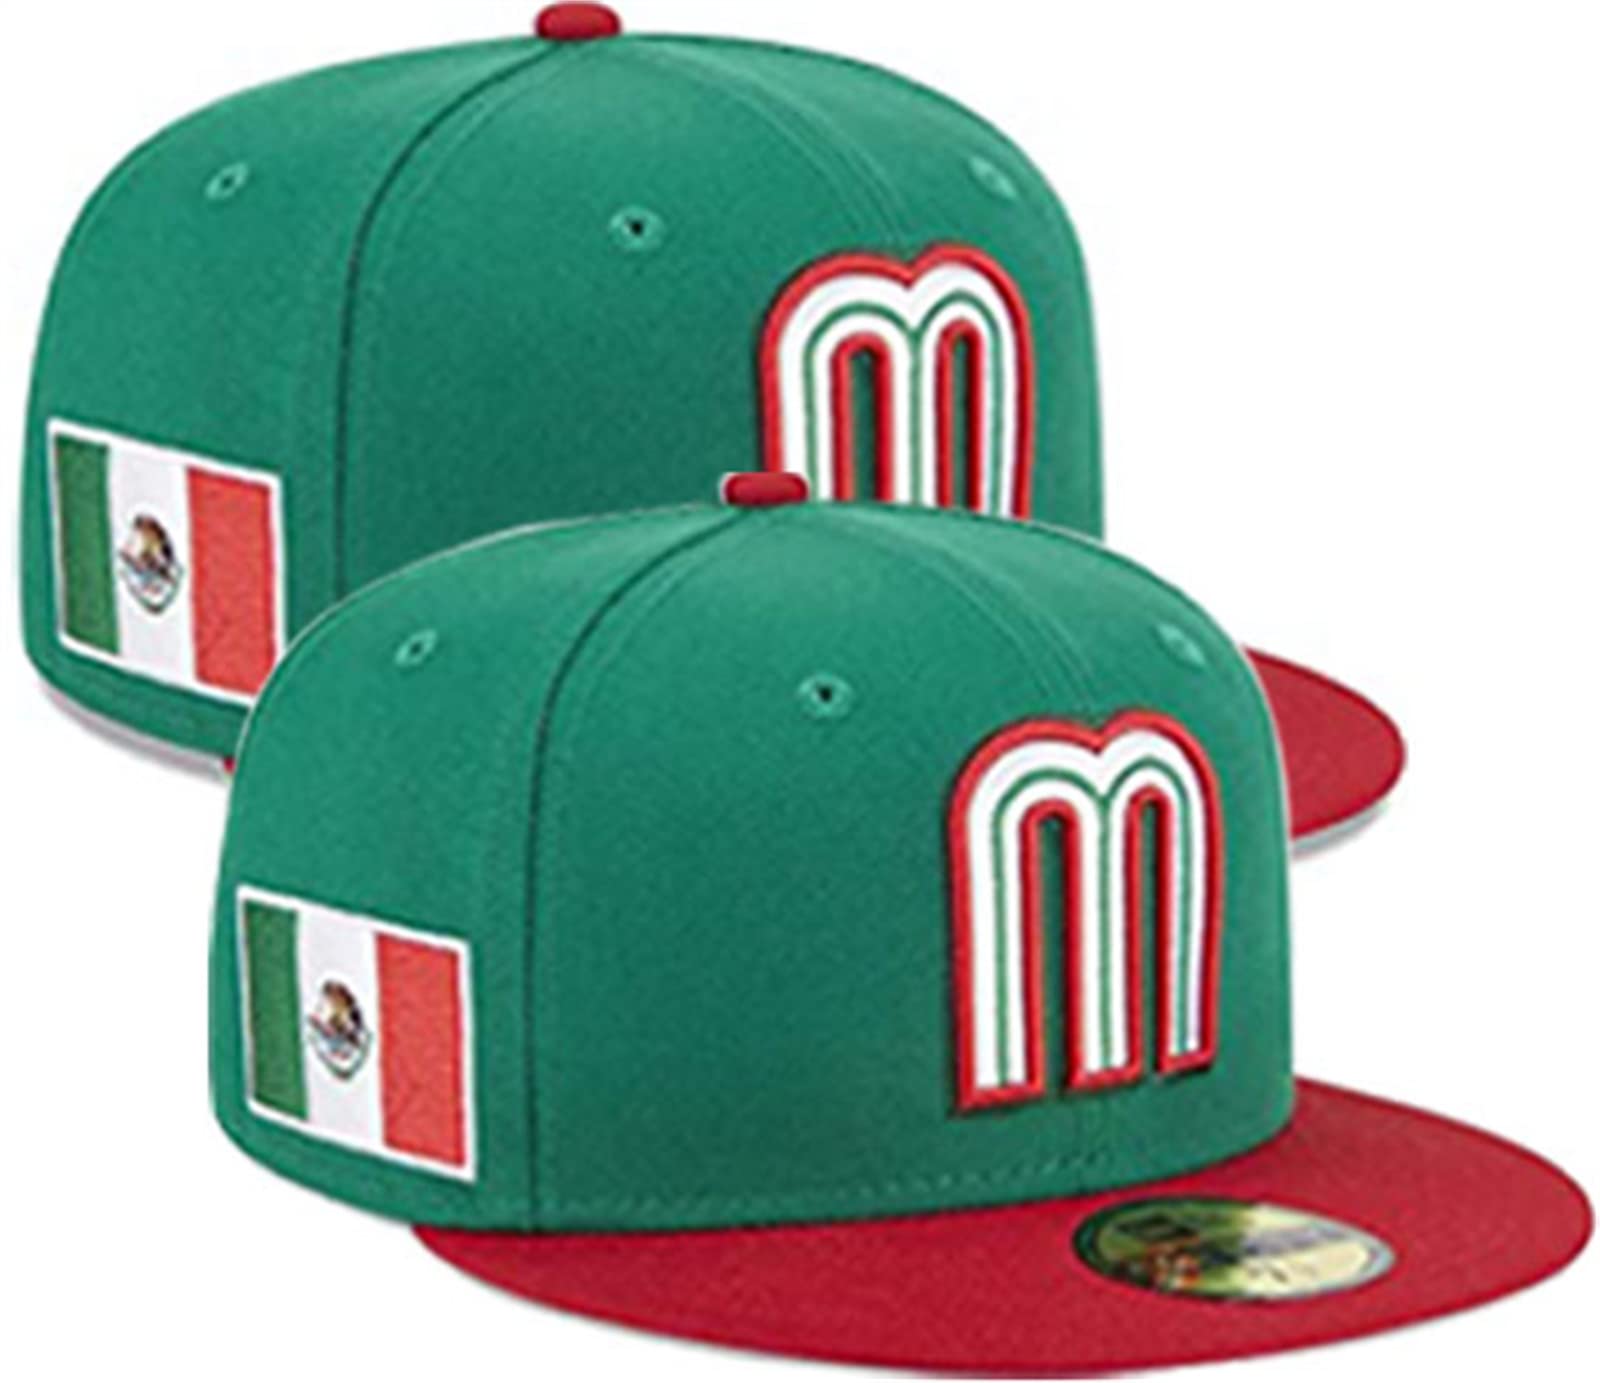 Mua Mexico Baseball hat,Gorra de Mexico Baseball,Gorras del Clasico